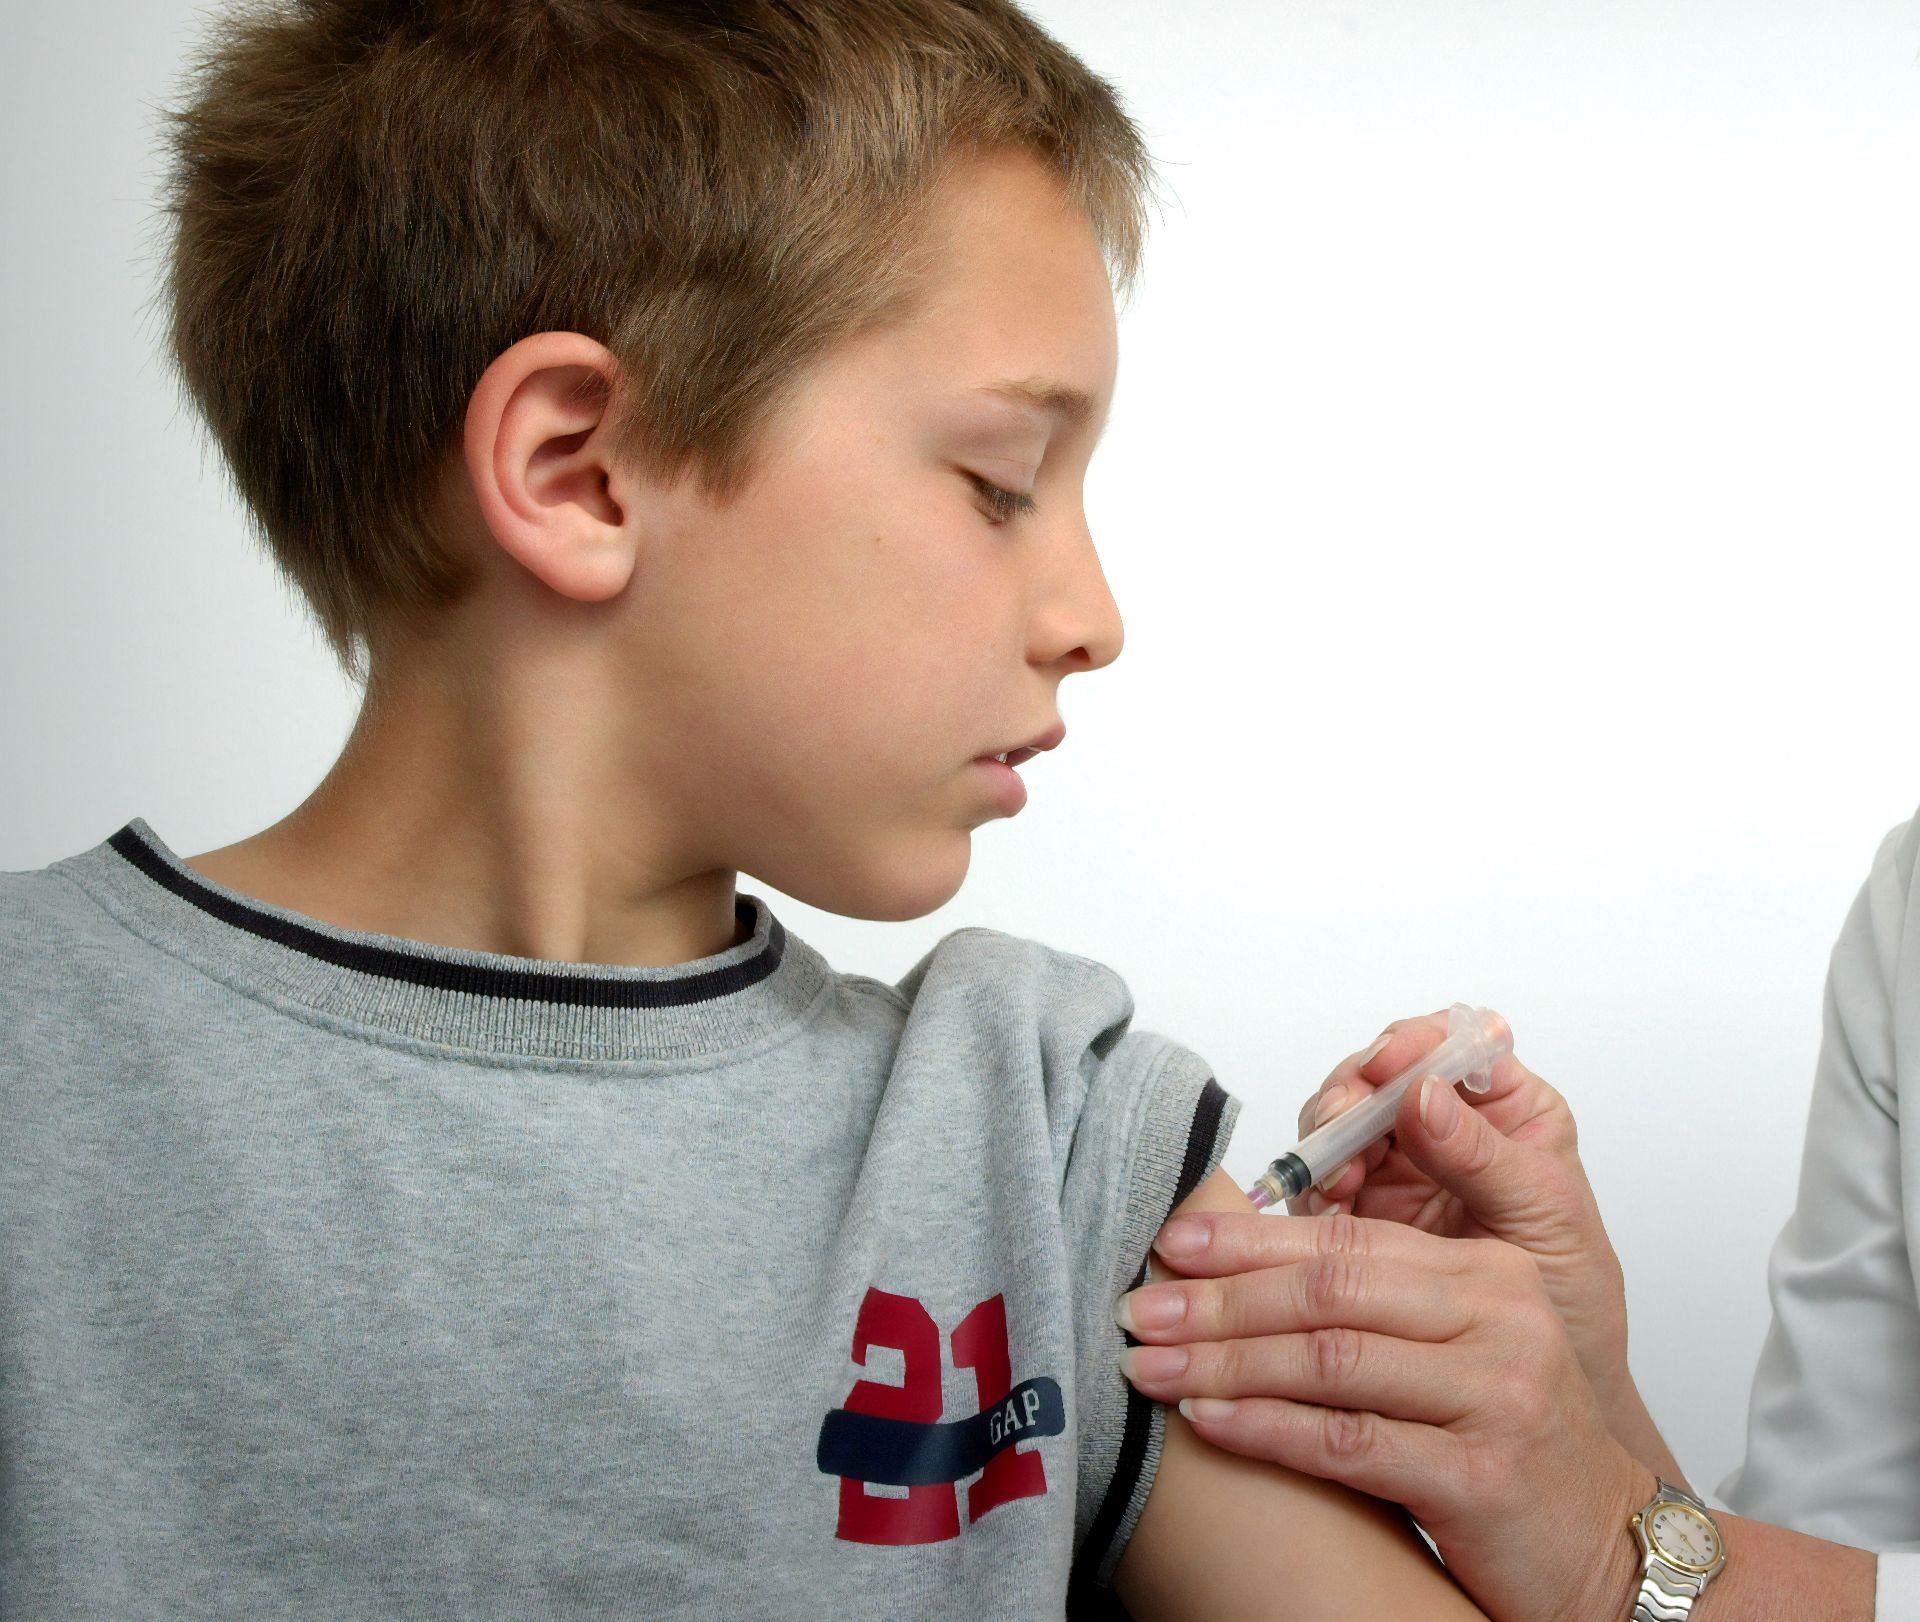 DSPMB are echipe mobile care pot vaccina anti-COVID în școli